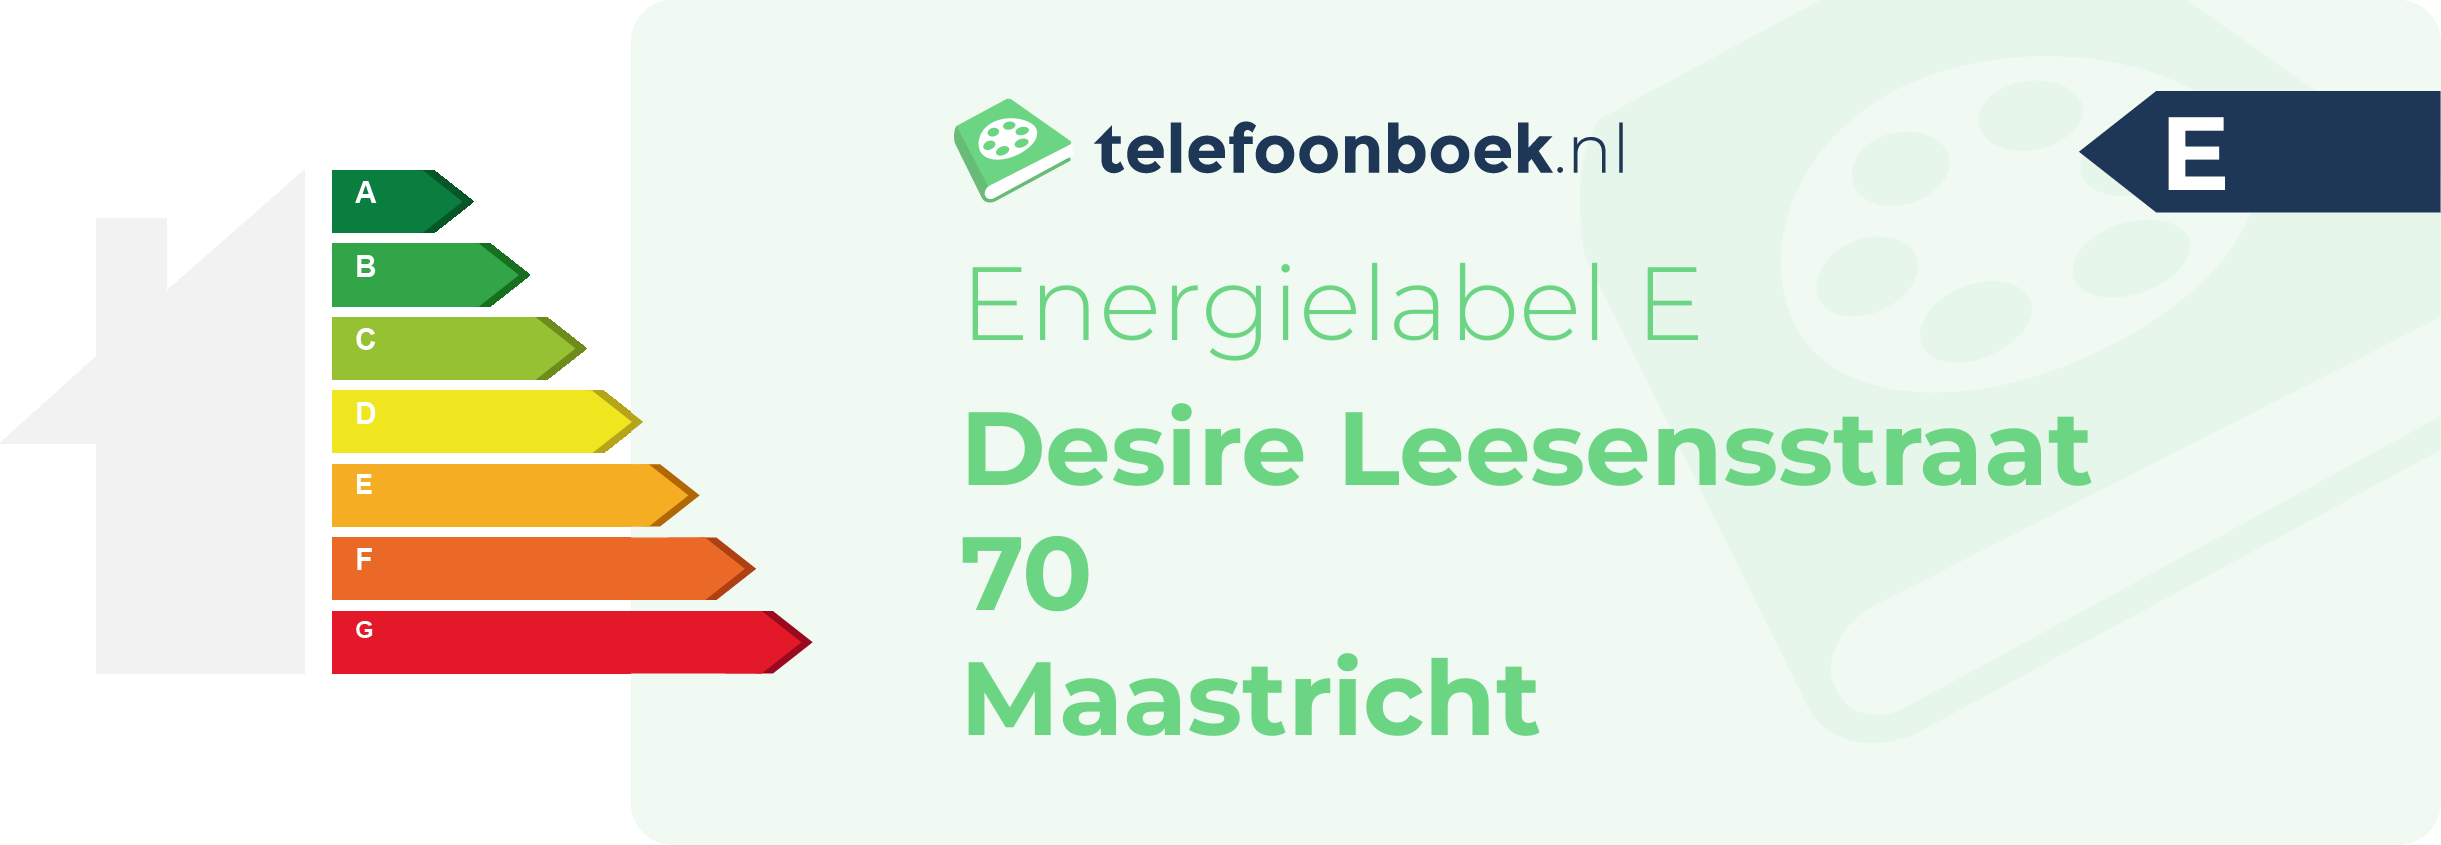 Energielabel Desire Leesensstraat 70 Maastricht